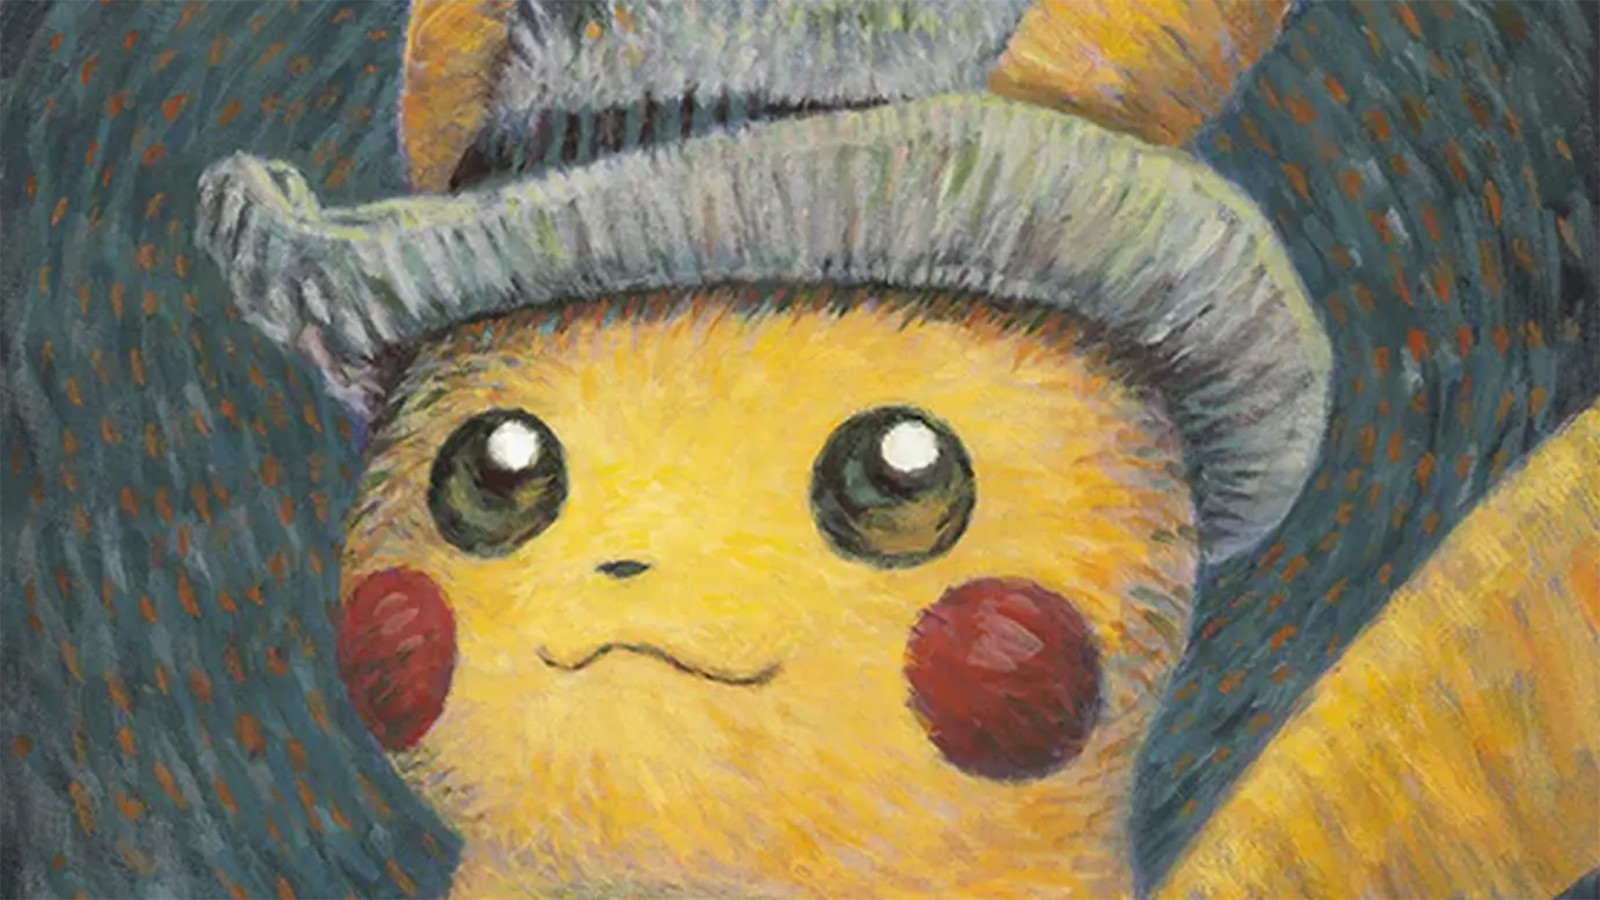 Sẽ ra sao nếu Pokémon xuất hiện trong tranh Van Gogh?